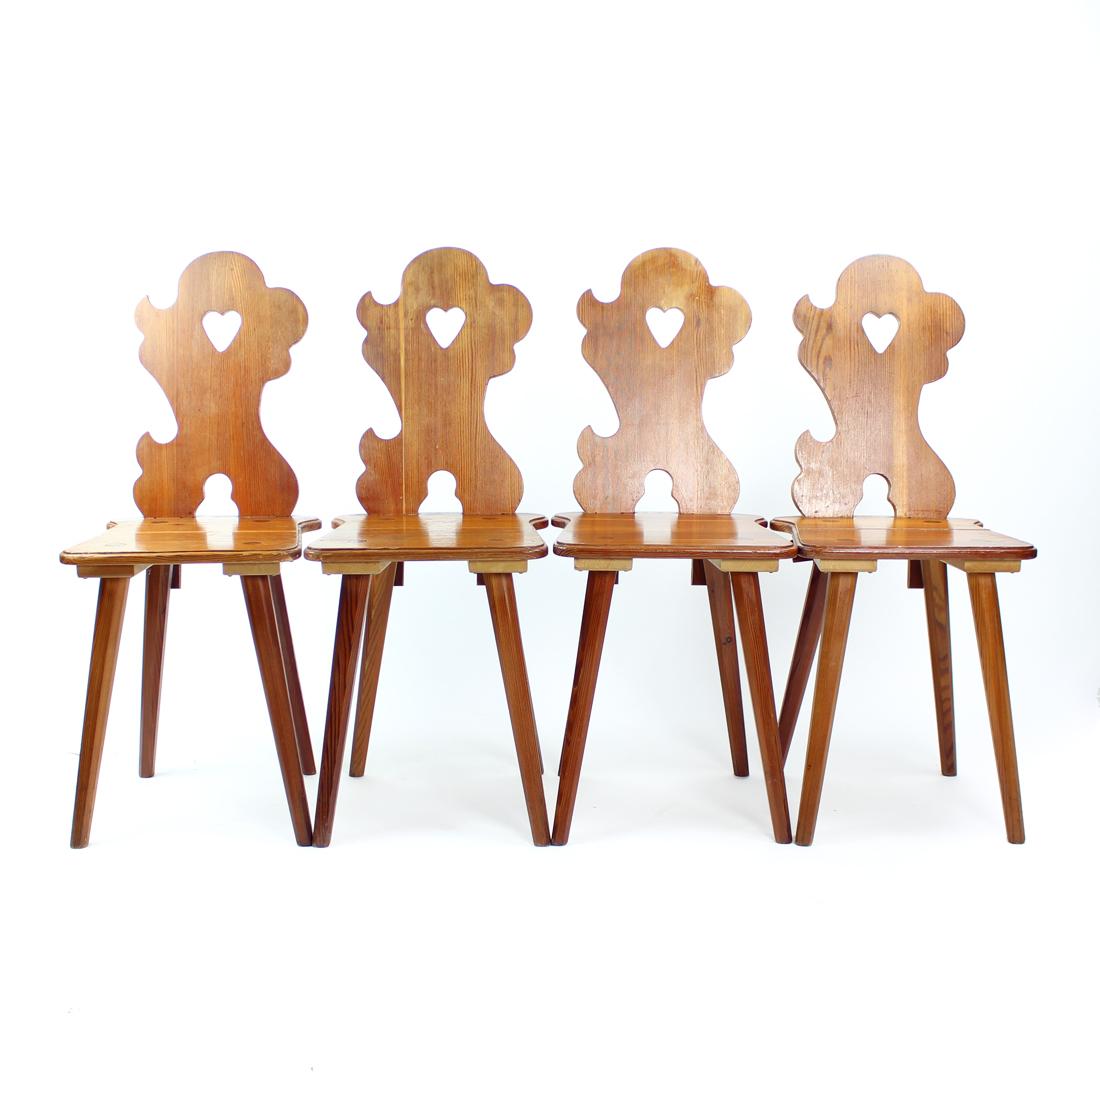 Schöner Satz von vier Esszimmerstühlen, hergestellt im Jahr 1973 von der Firma LIPTA in der Tschechoslowakei. Die Stühle sind aus geschnitzten Lärchenholzplatten gefertigt. Die Stühle zeigen ein wunderschönes Design, das auf den tschechoslowakischen